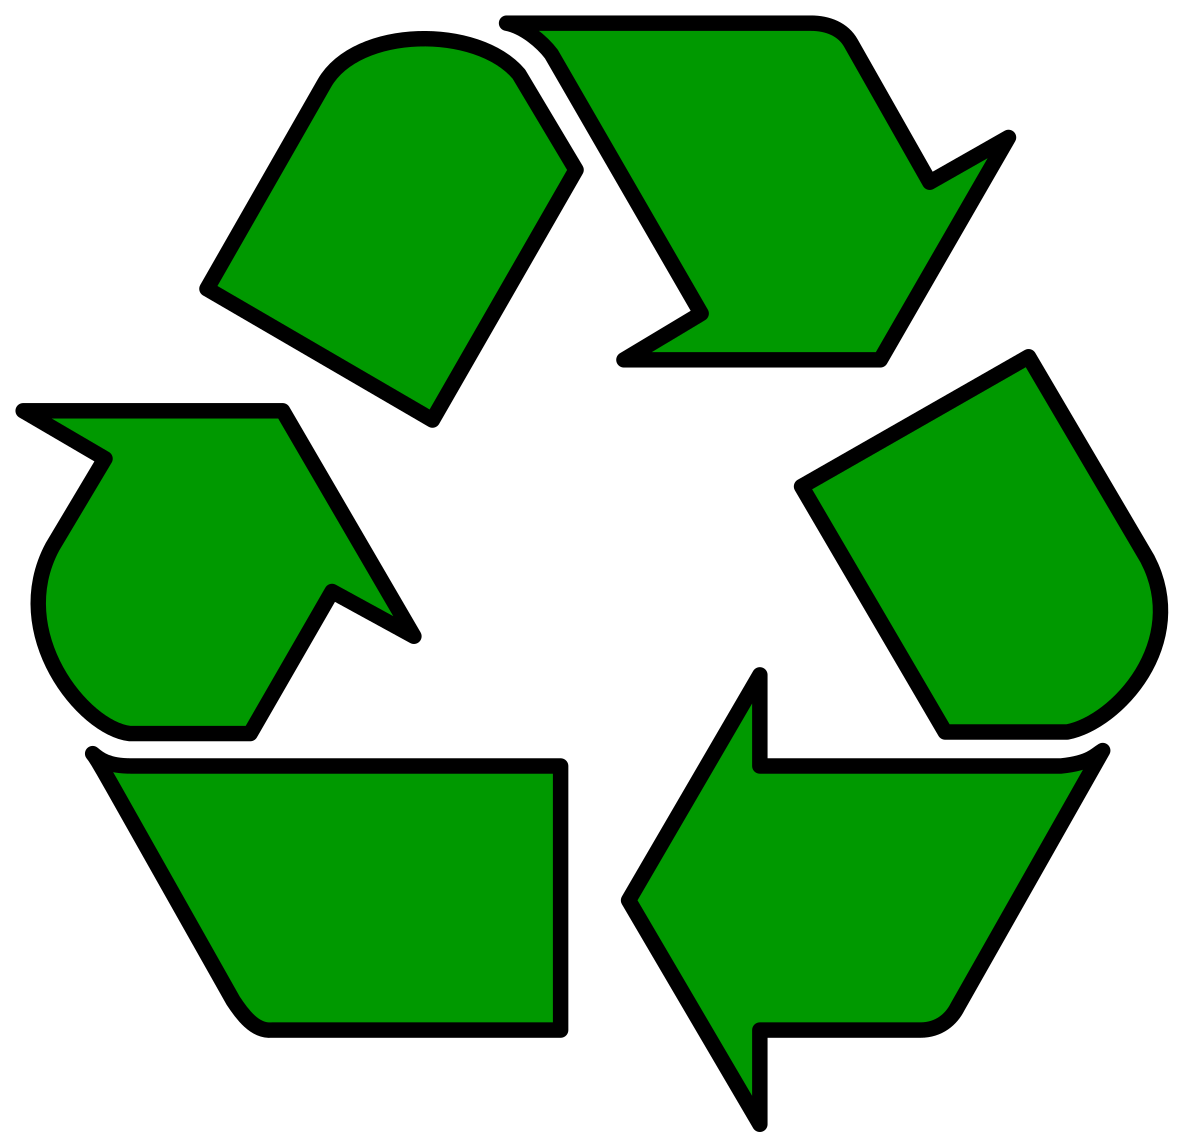 Recycling symbol - Wikipedia